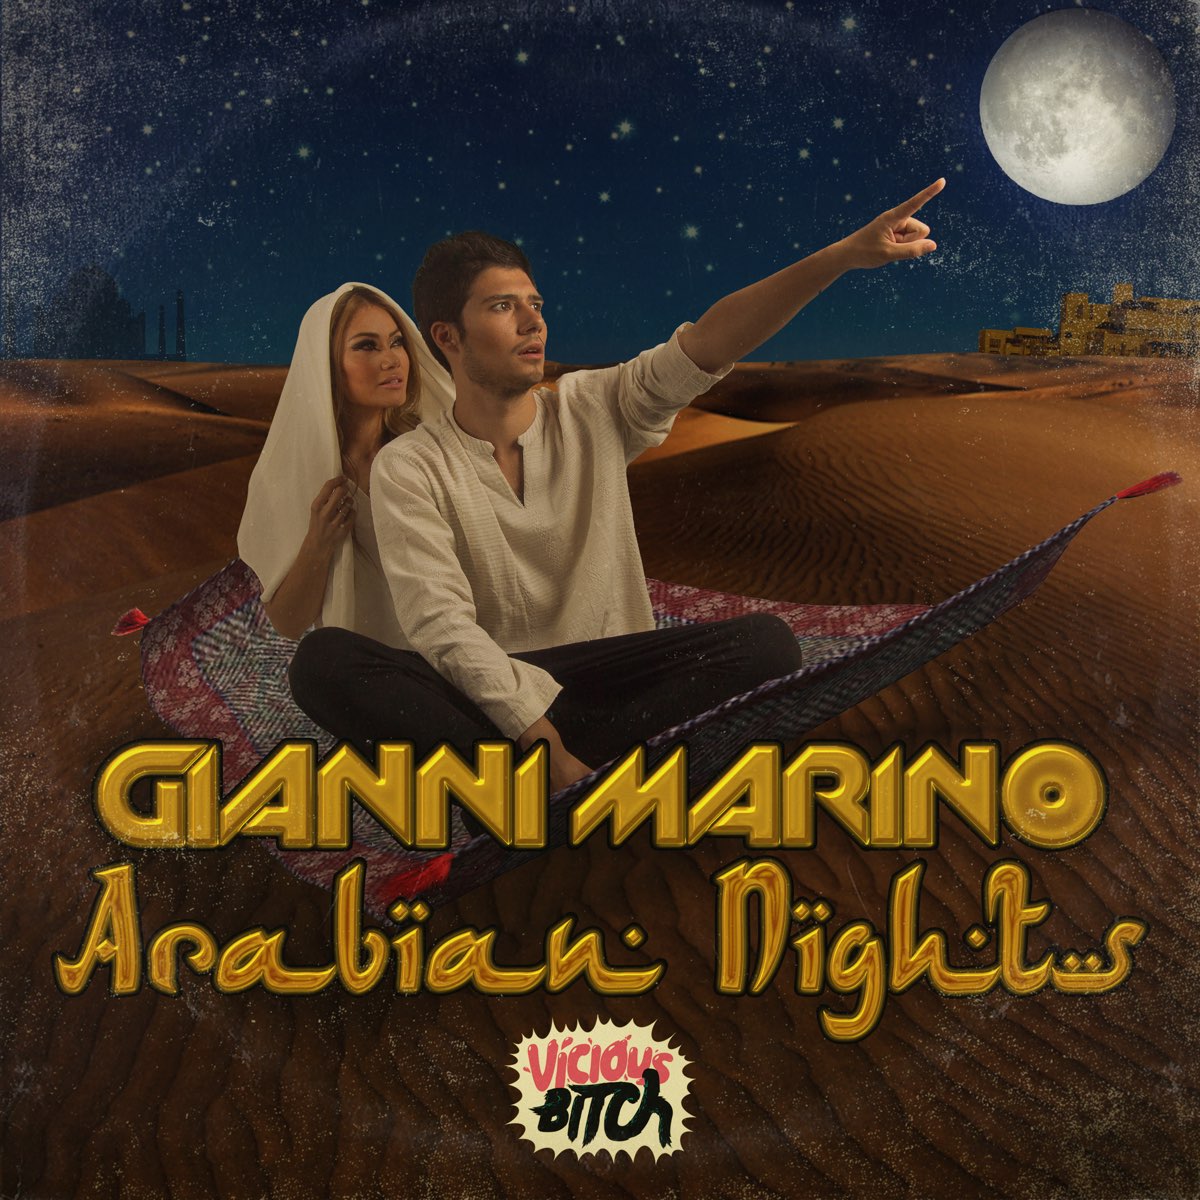 Arabian Night оригинал. Арабская ночь песня. Арабиан Найт песня.